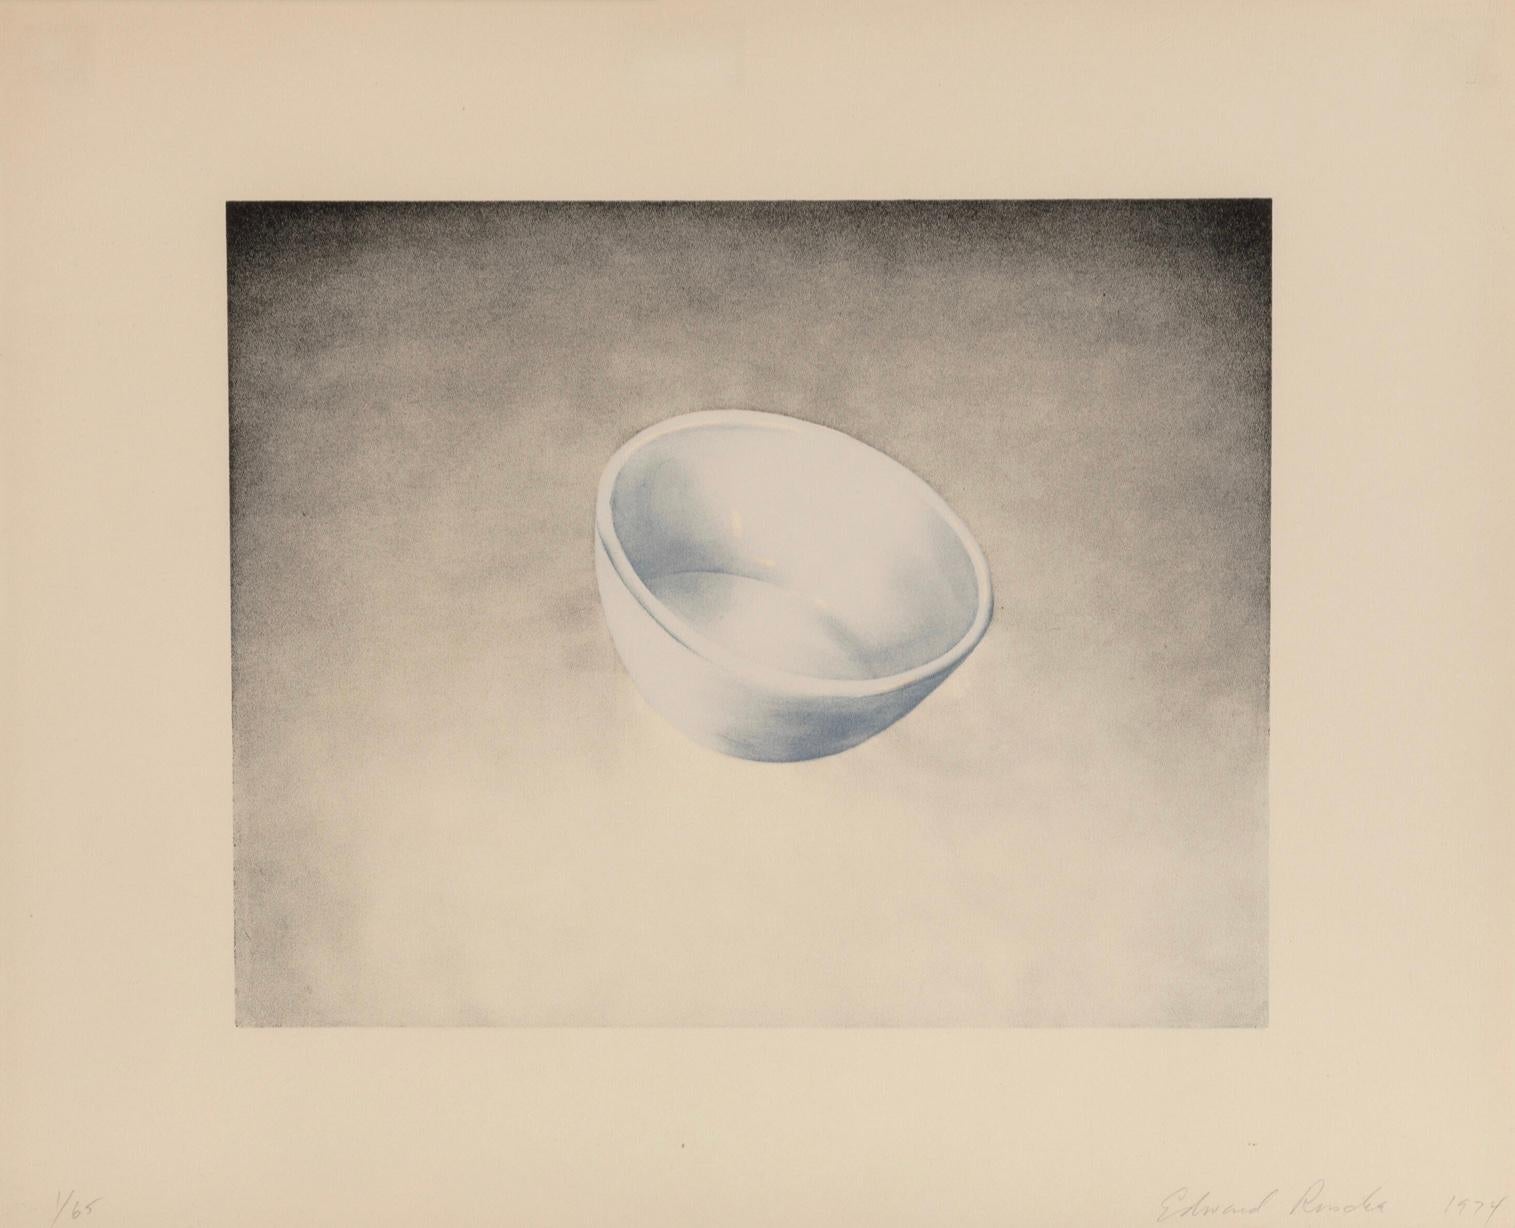 ED RUSCHA (1937-aujourd'hui)

L'estampe "Bowl" d'Ed Ruscha, tirée de Domestic Tranquility, est une lithographie imprimée en couleurs, 1974, sur papier Arches Cover. Elle est signée, datée et numérotée 1/65 (il y a également eu 24 épreuves d'artiste)